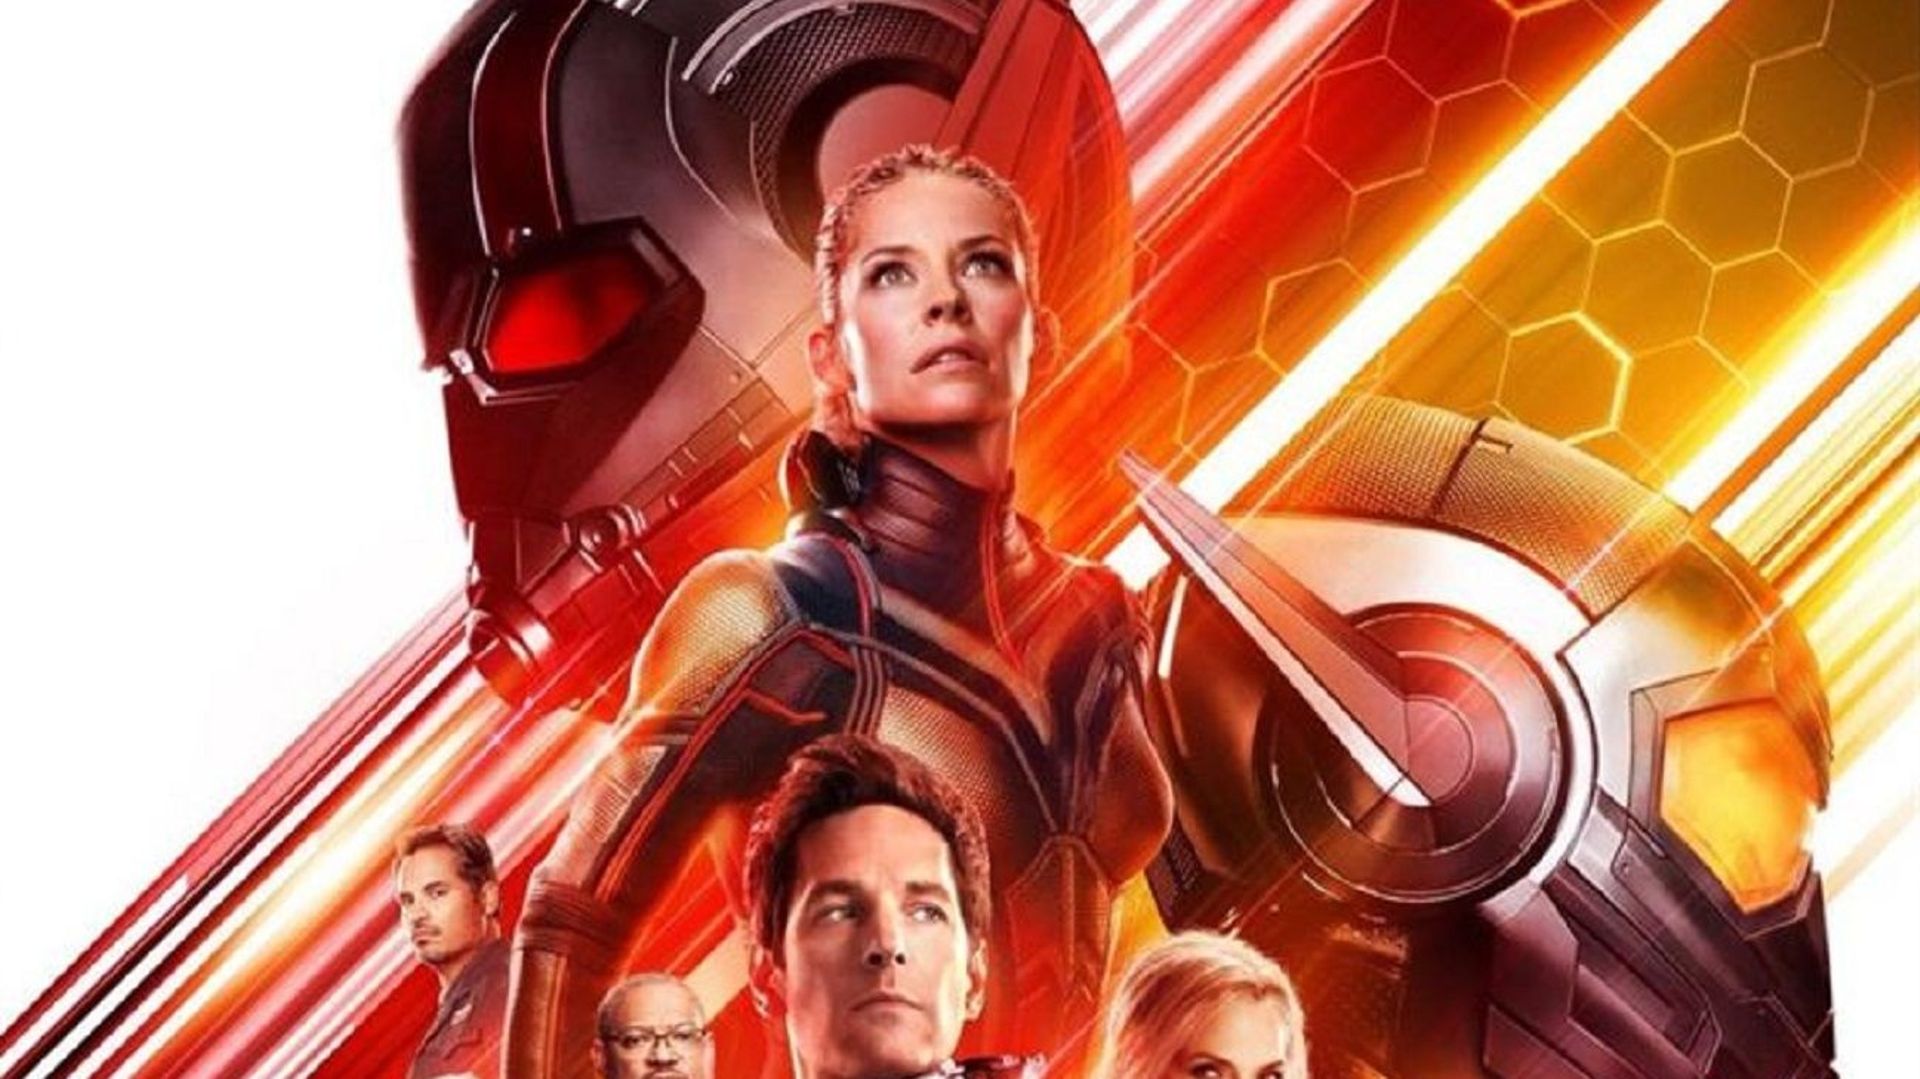 Les studios Marvel ont voulu faire plaisir à leurs fans en publiant sur Youtube une vidéo inédite qui donne des indices sur la façon dont "Ant-Man et la Guêpe" sera lié à "Avengers : Infinity War".